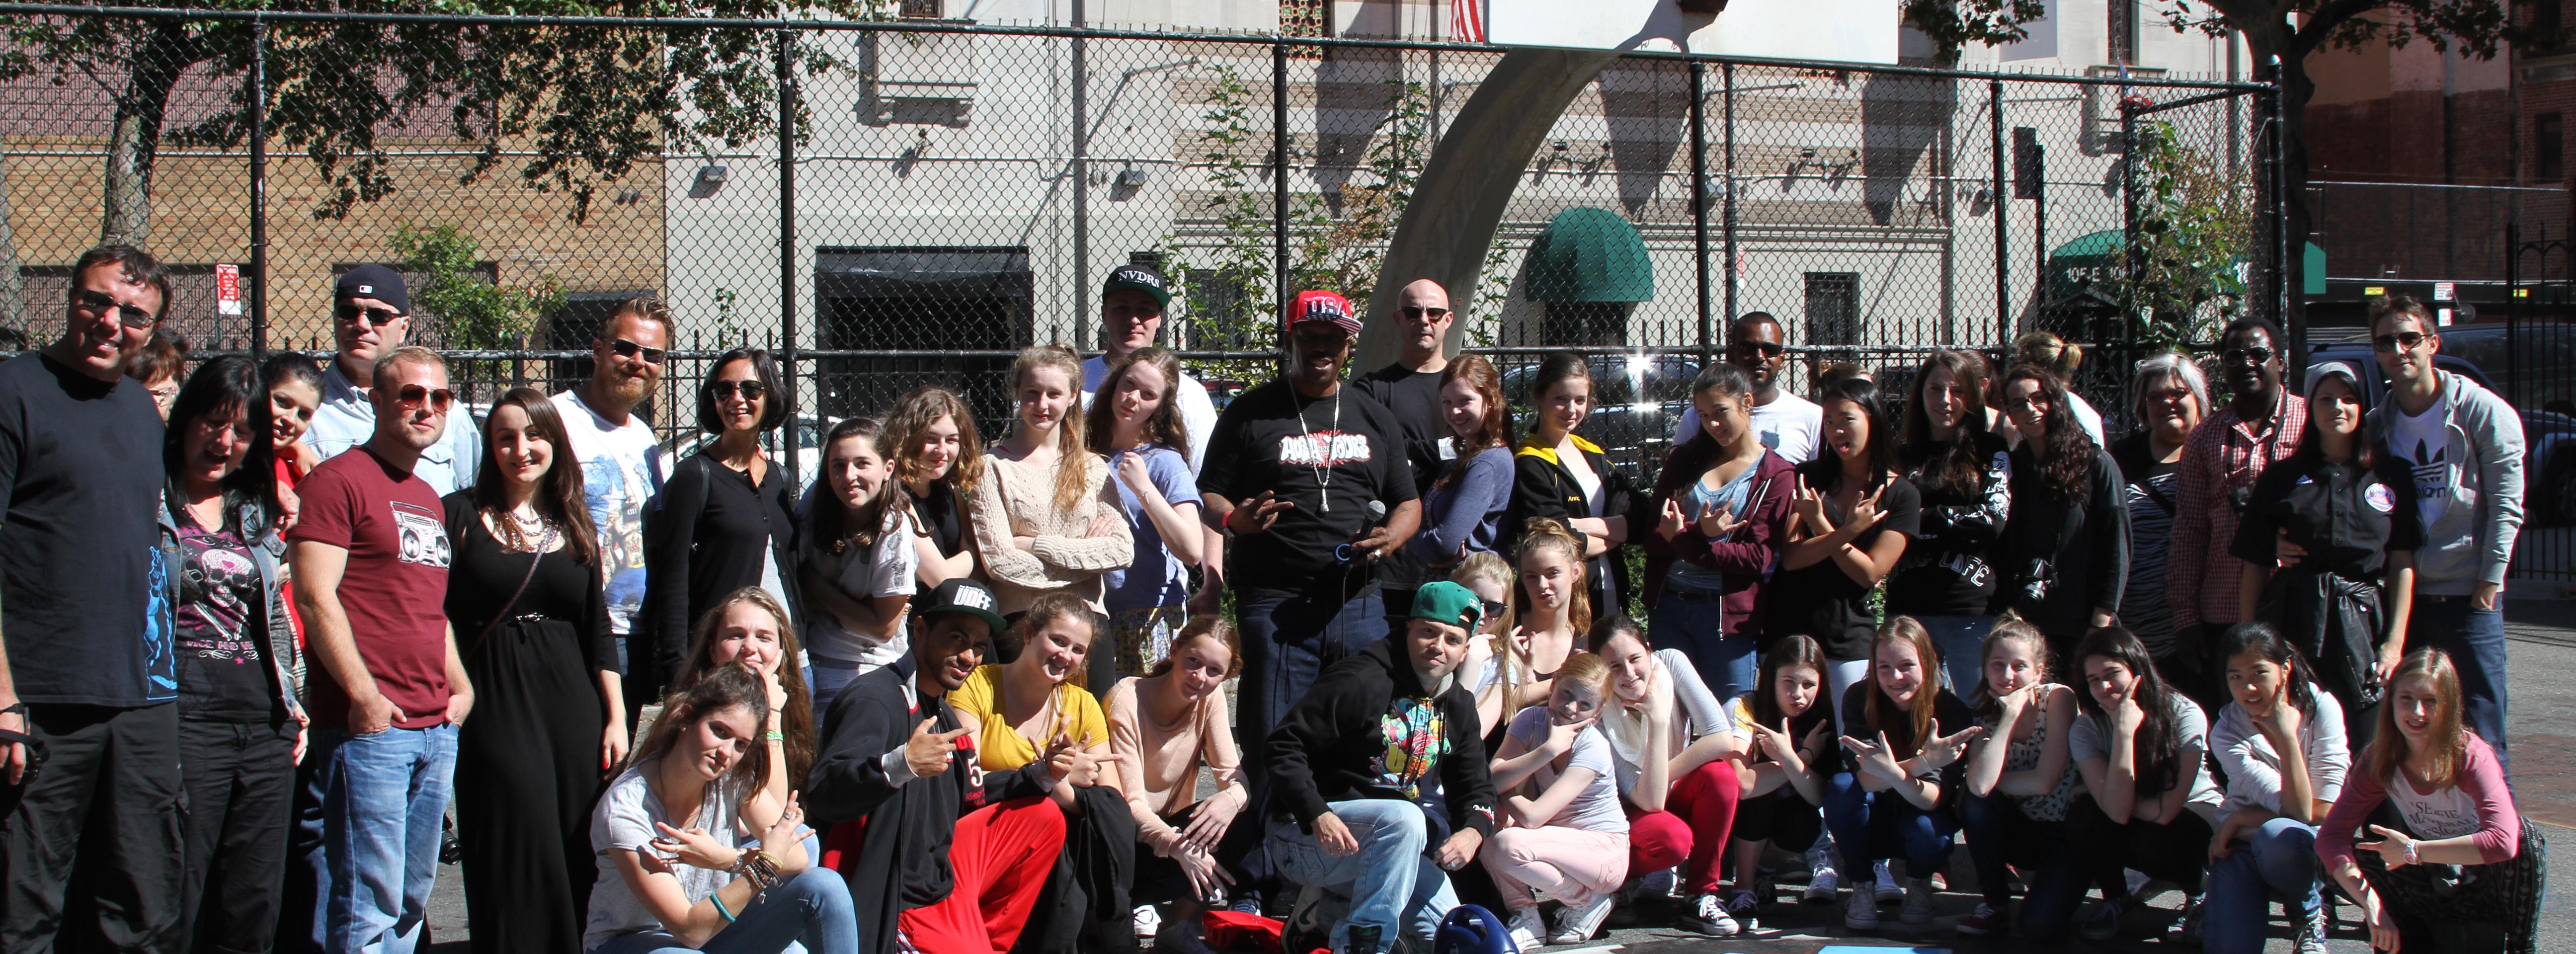 Discover Hip Hop Culture – Bus tour through the Bronx and Harlem